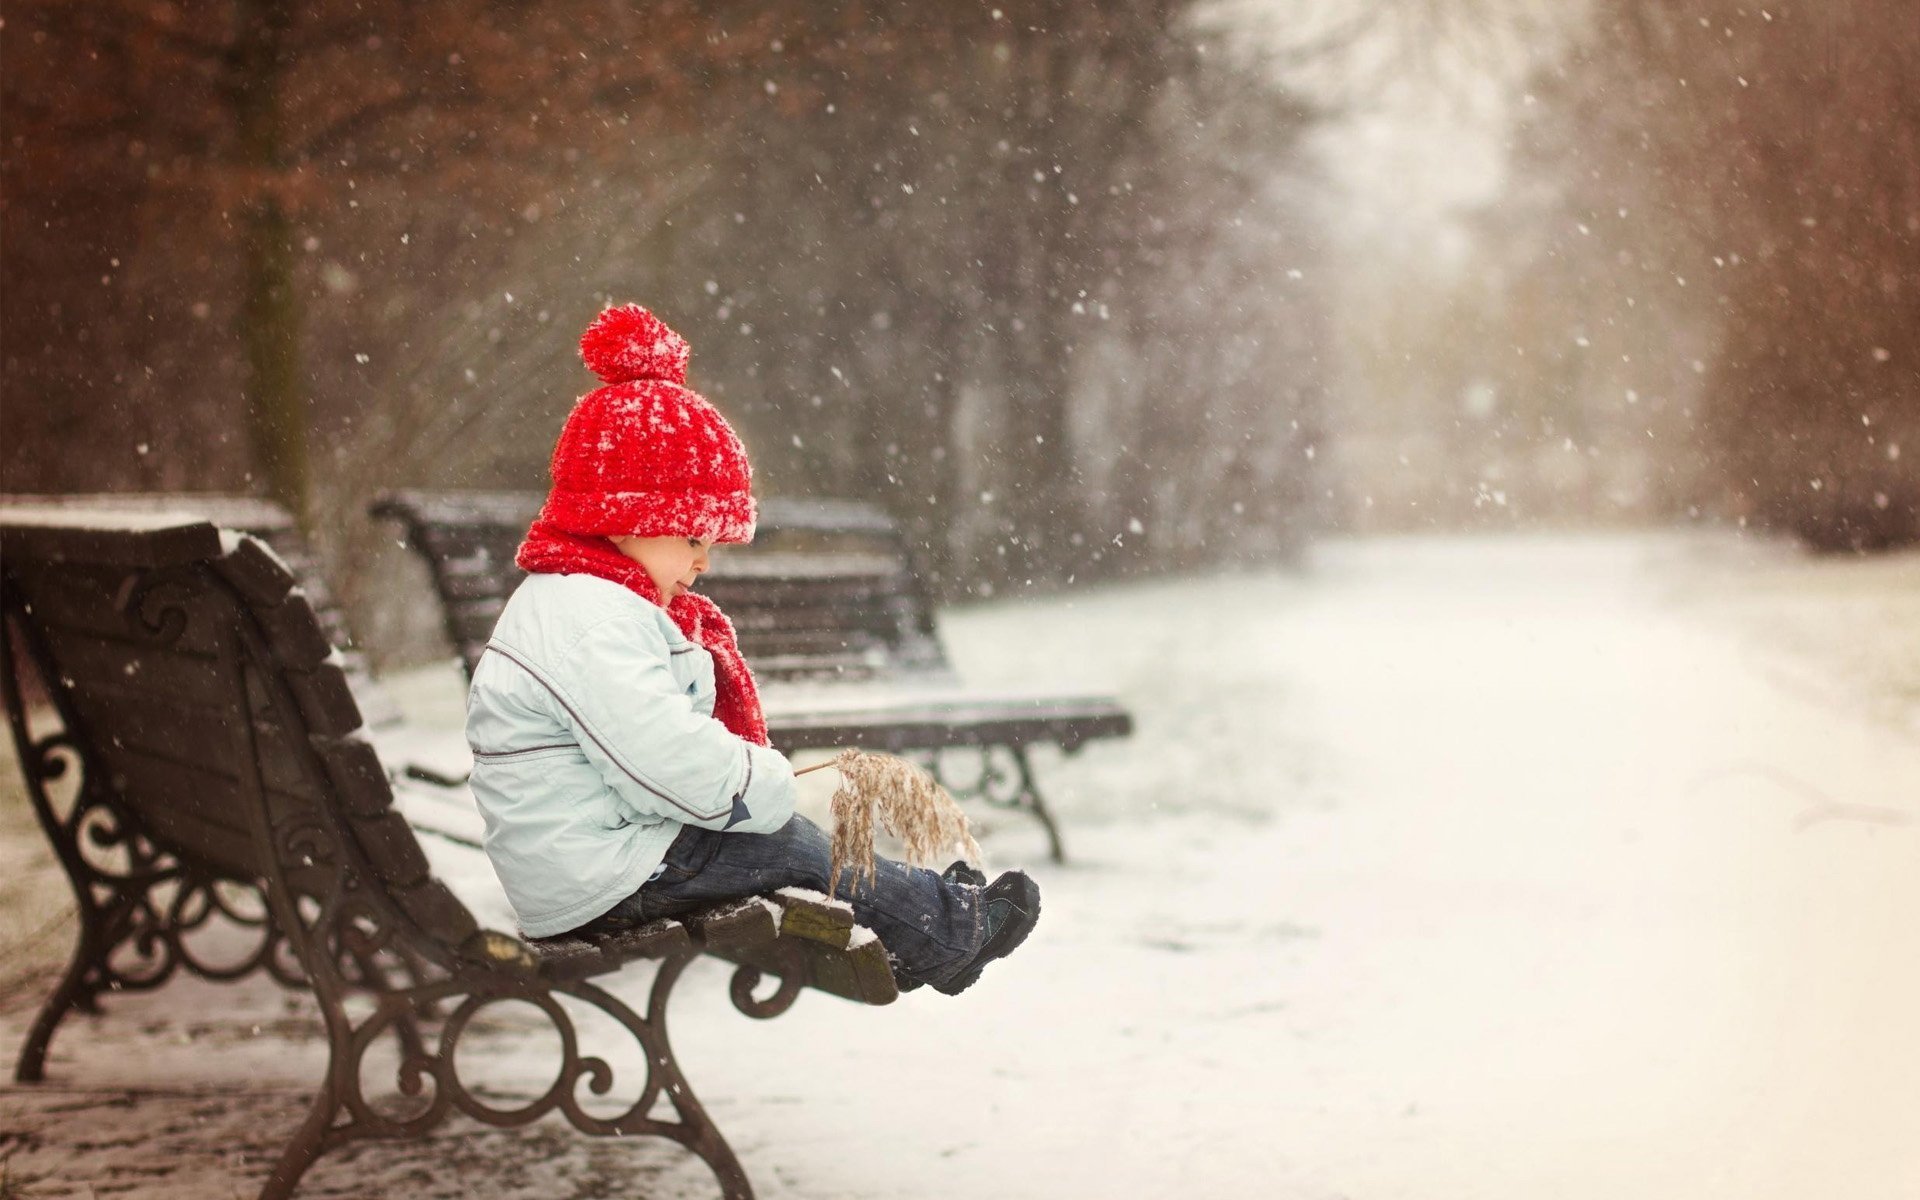 Сидит сугробе. Сидит на скамейке зимой. Люди зимой на скамейке. Зима одиночество. Парень на лавочке зимой.